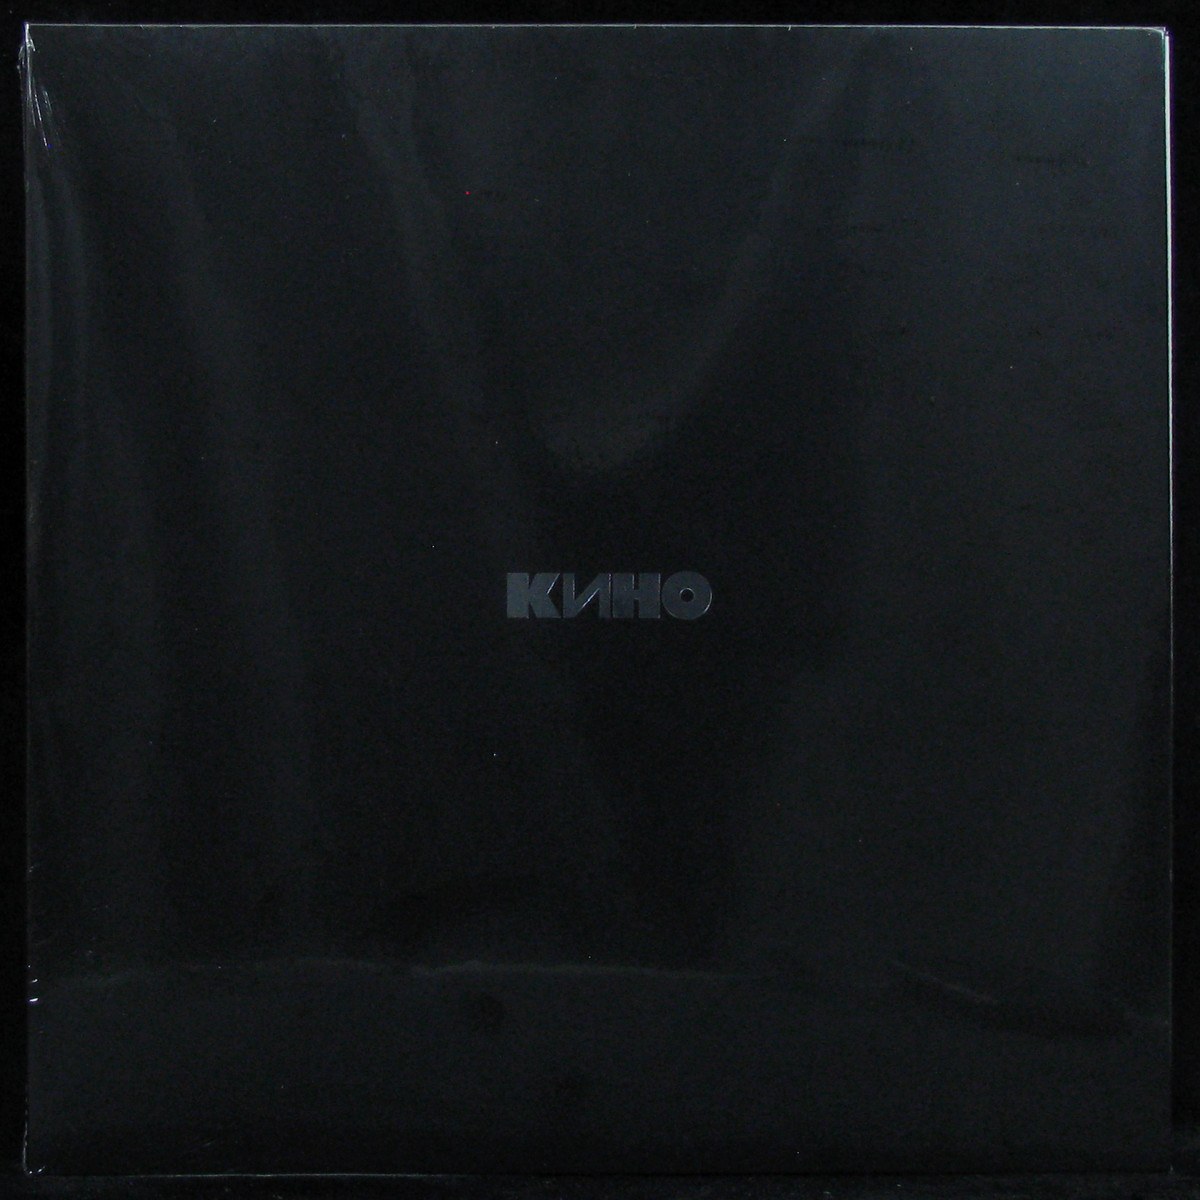 LP Кино — Кино (Черный Альбом) фото